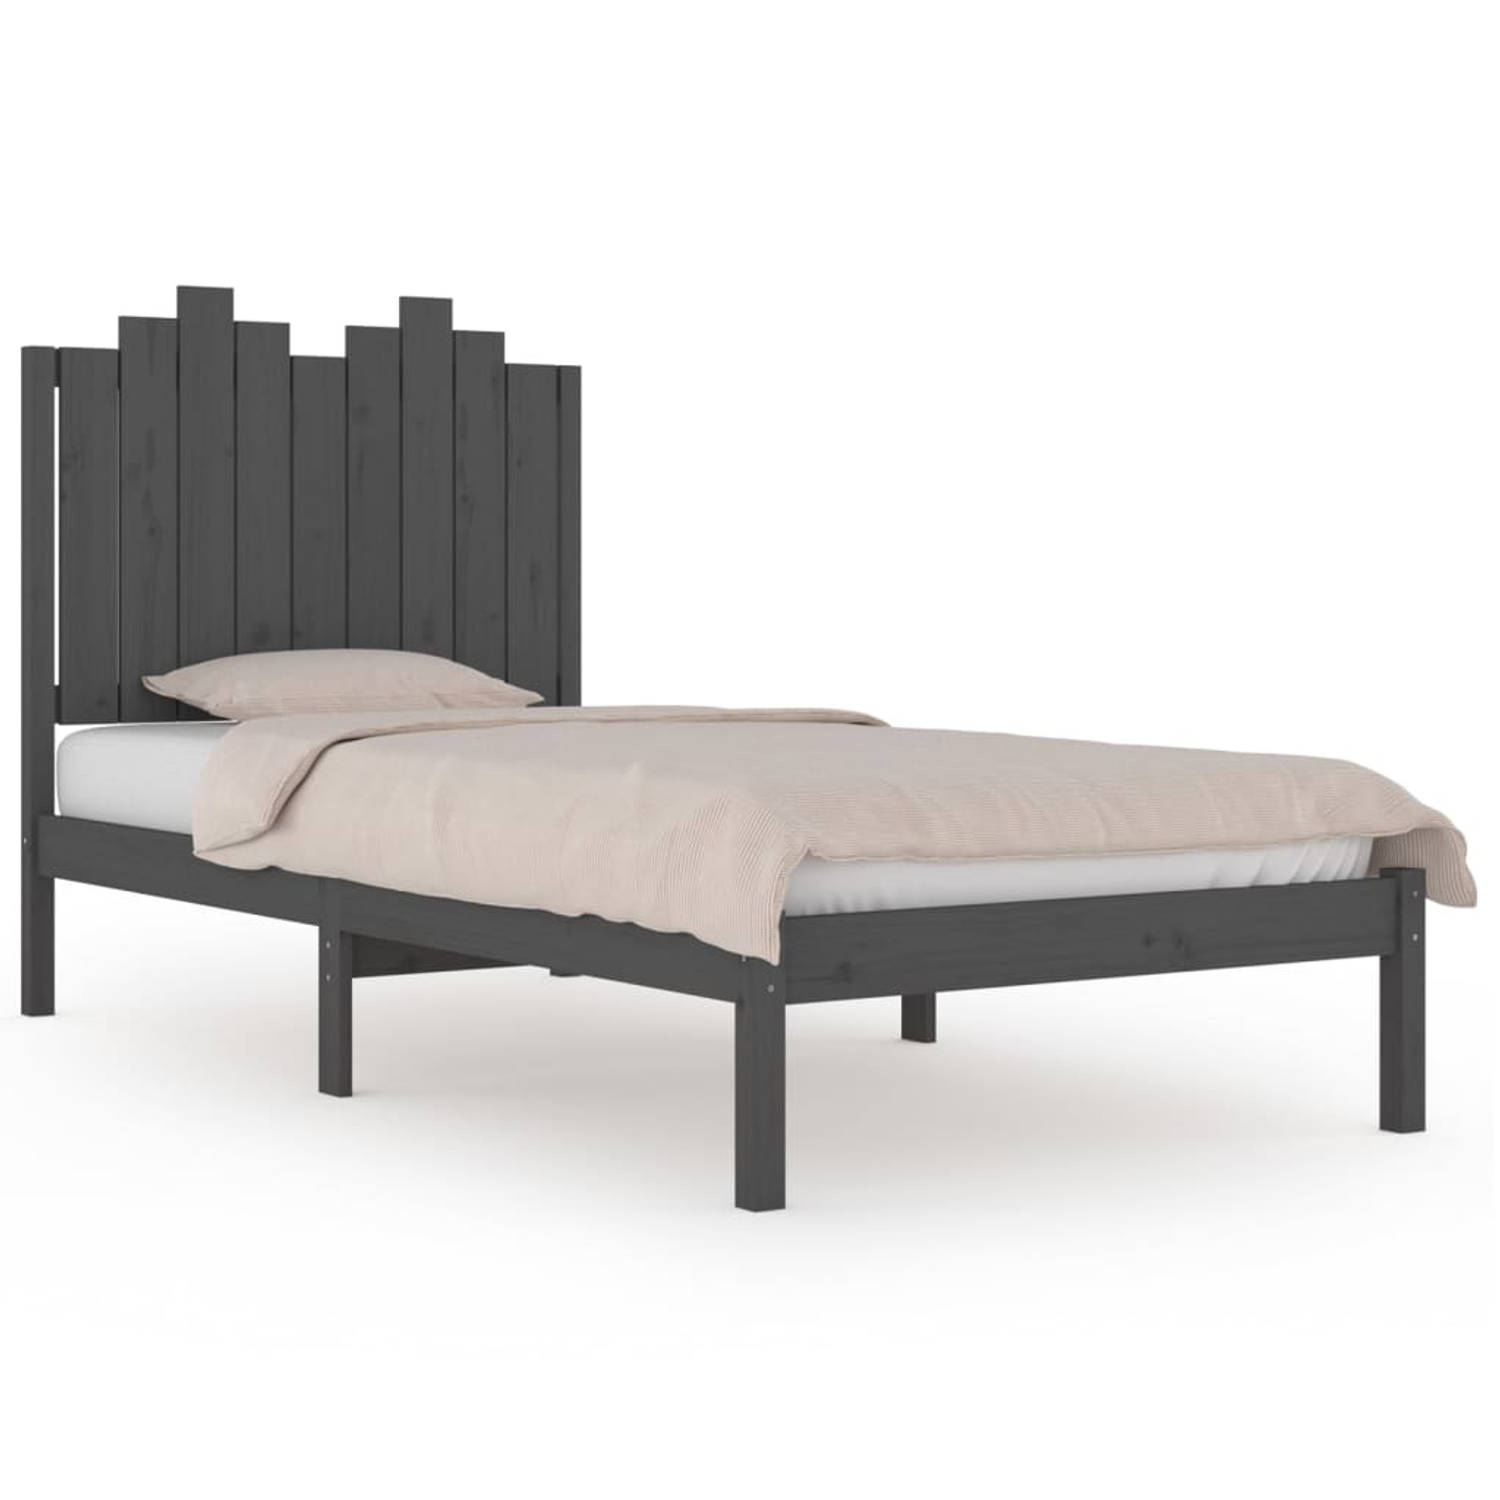 The Living Store Bedframe massief grenenhout grijs 100x200 cm - Bedframe - Bedframes - Eenpersoonsbed - Bed - Bedombouw - Enkel Bed - Frame - Bed Frame - Ledikant - Houten Bedframe